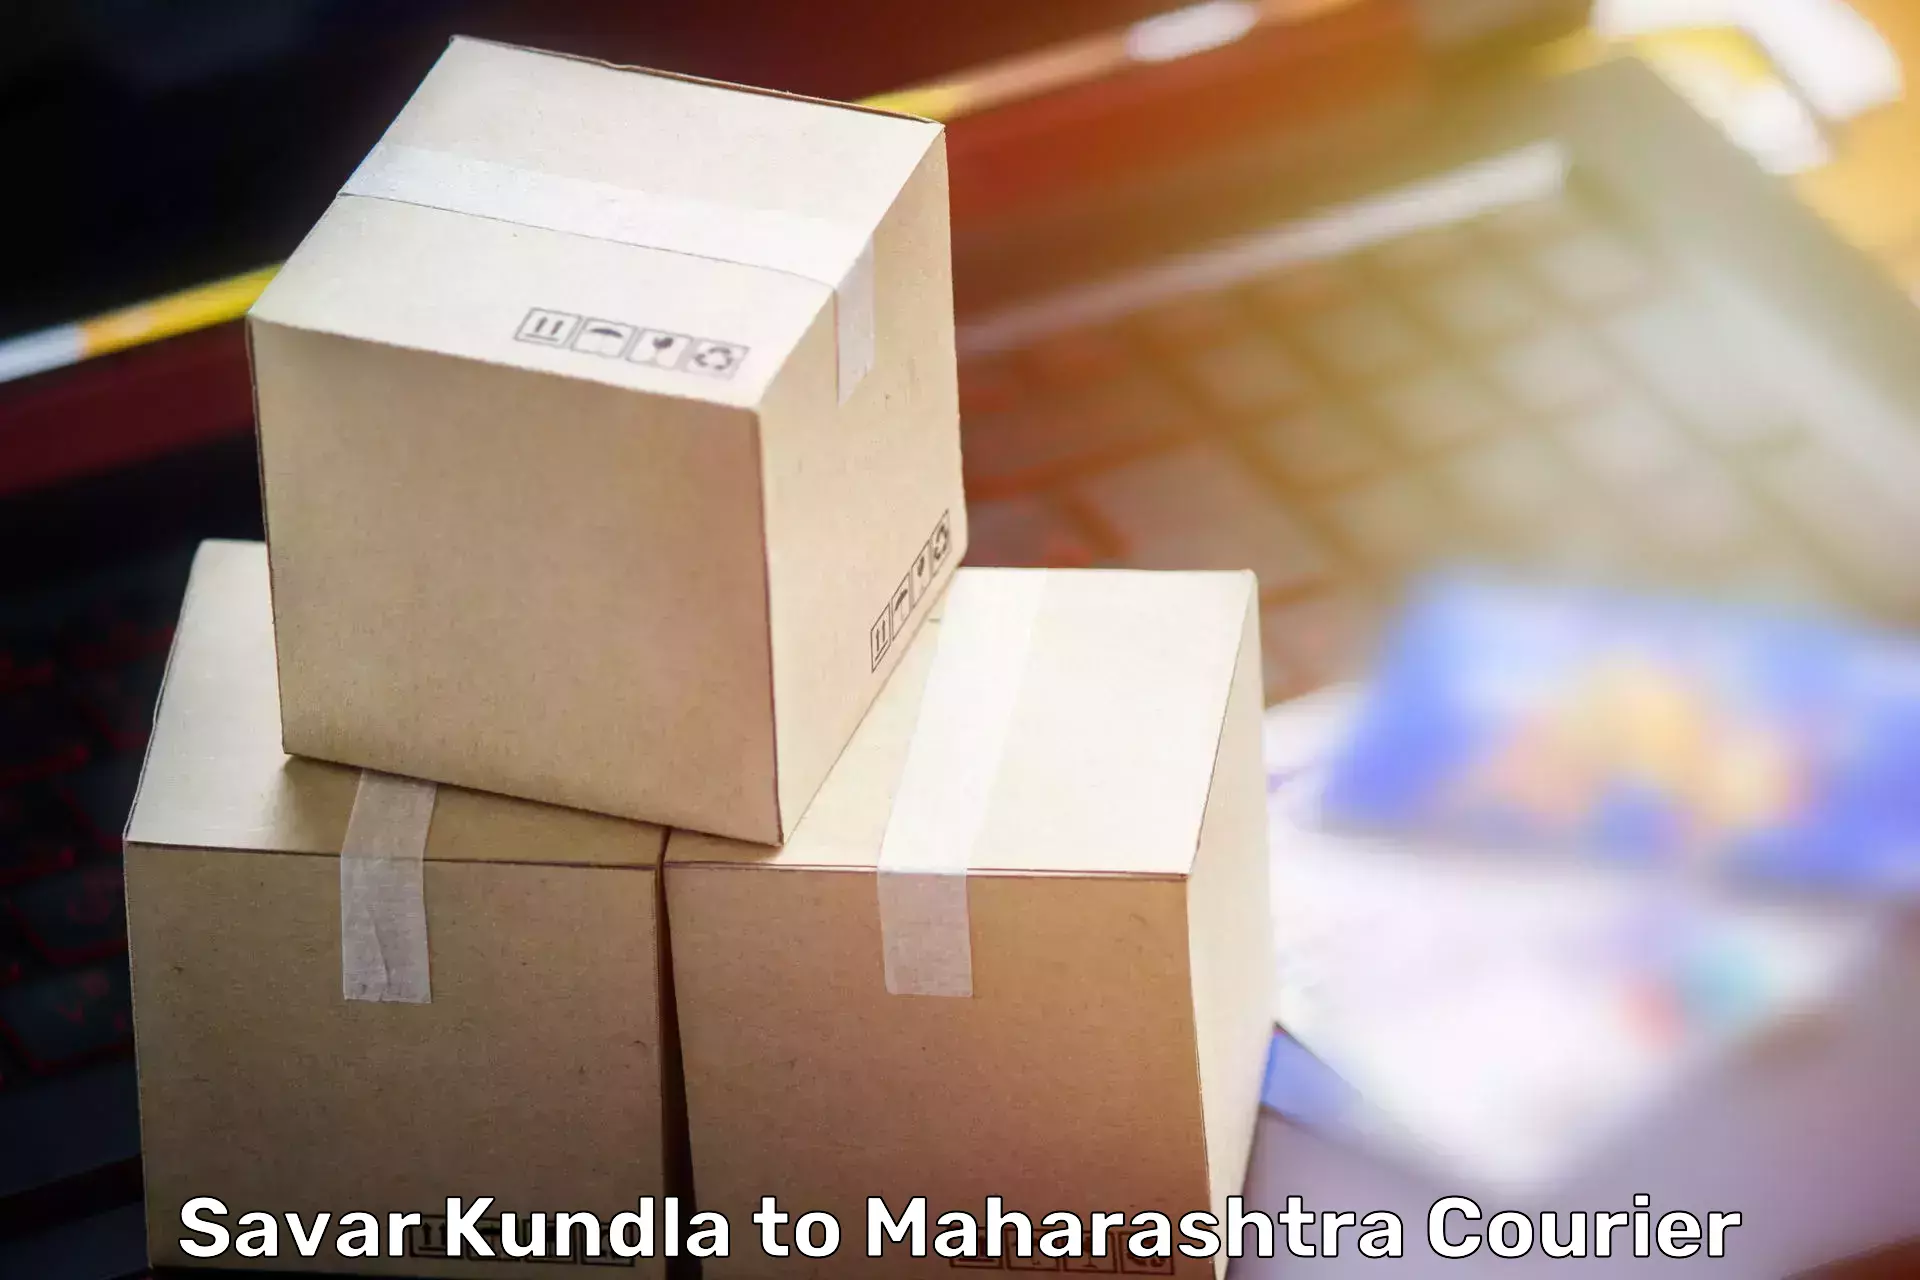 Customized furniture moving Savar Kundla to Dr Babasaheb Ambedkar Marathwada University Aurangabad